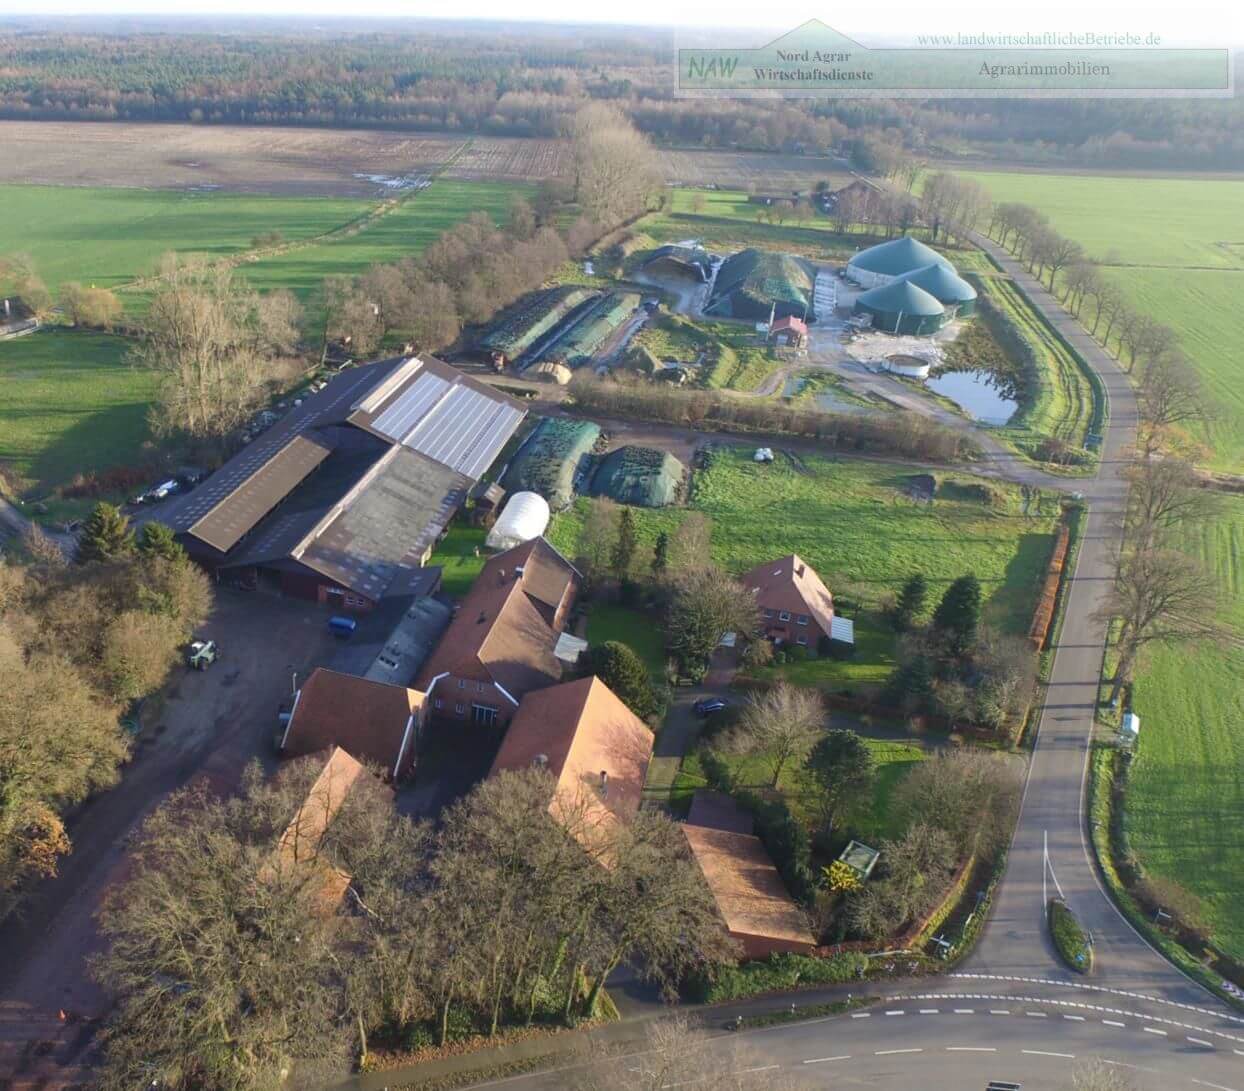 Jens-Wilken-NAW-Milchviehbetrieb-mit-Biogasanlage-Luftfoto